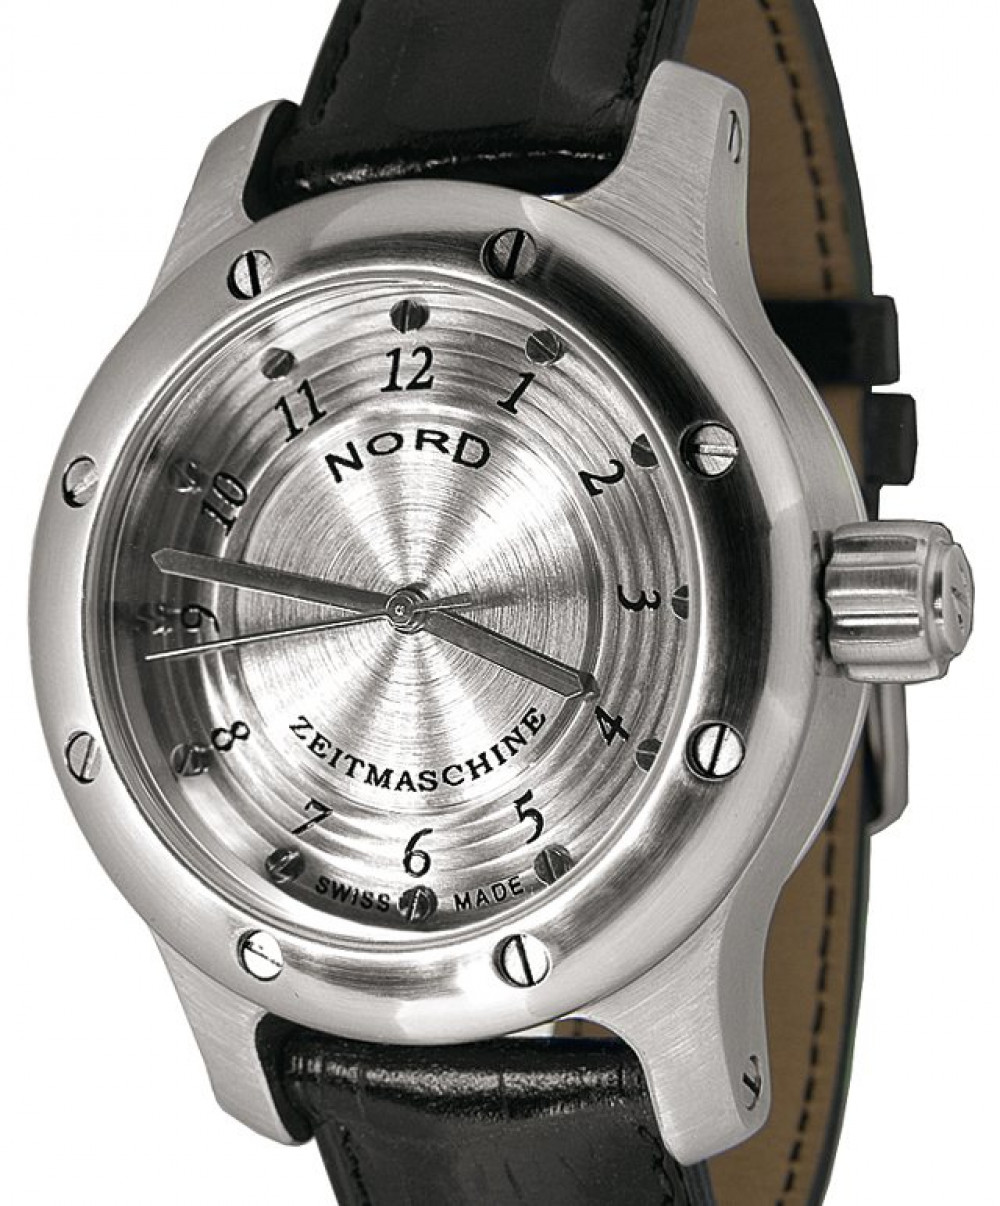 Zegarek firmy Nord Zeitmaschine, model T1